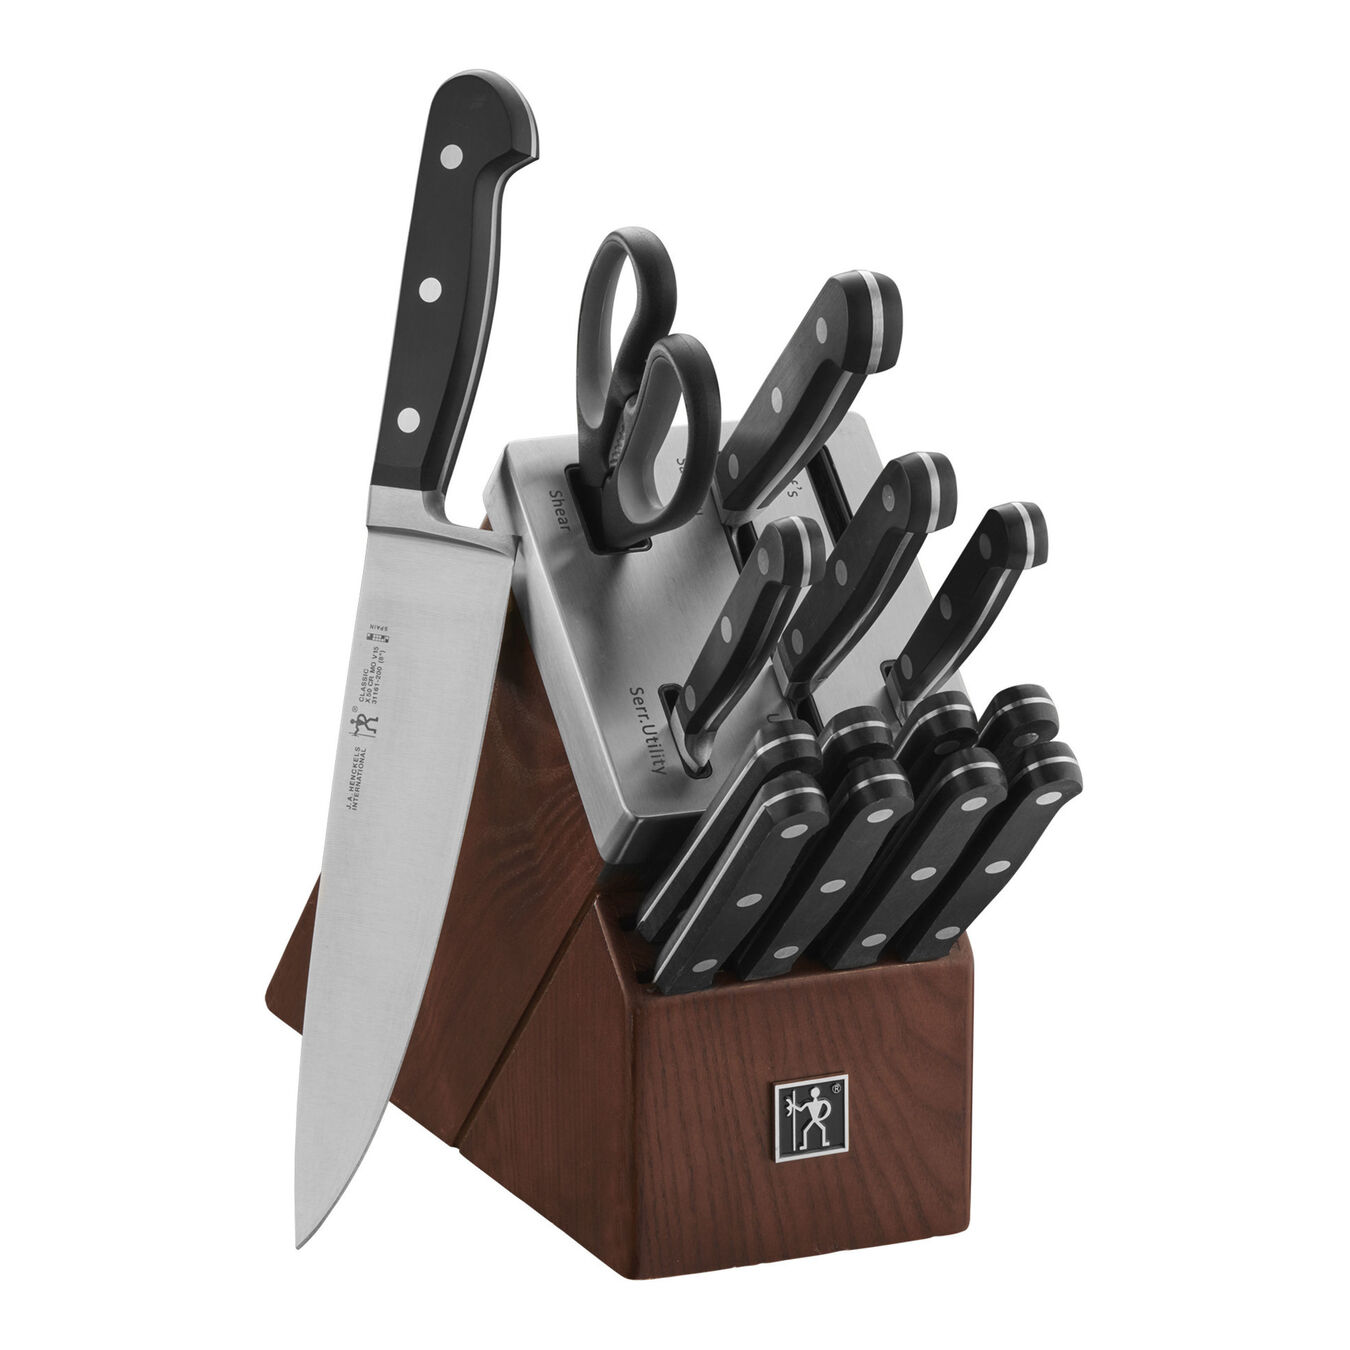 15-pc, Self-Sharpening Knife Block Set, brown,,large 1